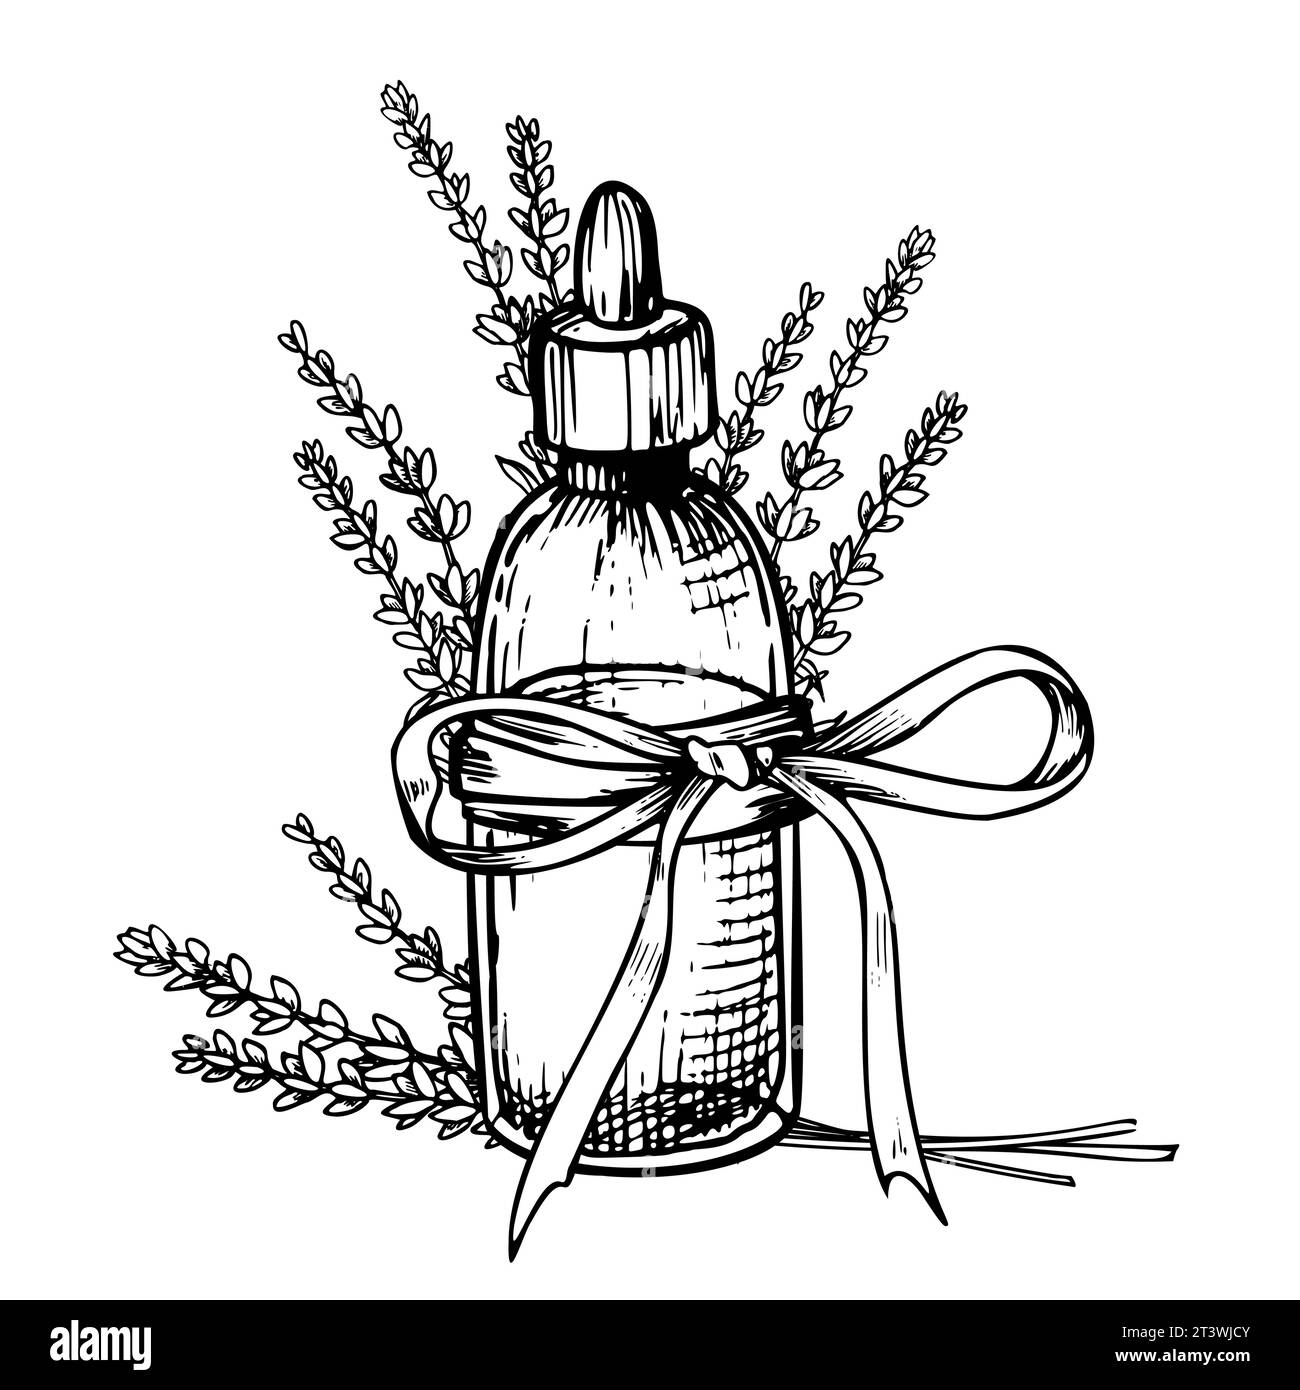 Olio essenziale di lavanda. Illustrazione vettoriale lineare disegnata a mano di bottiglia vintage per aromaterapia nei colori bianco e nero. Disegno di vecchio Flacon con fiori per medicina cosmetica o alternativa. Illustrazione Vettoriale